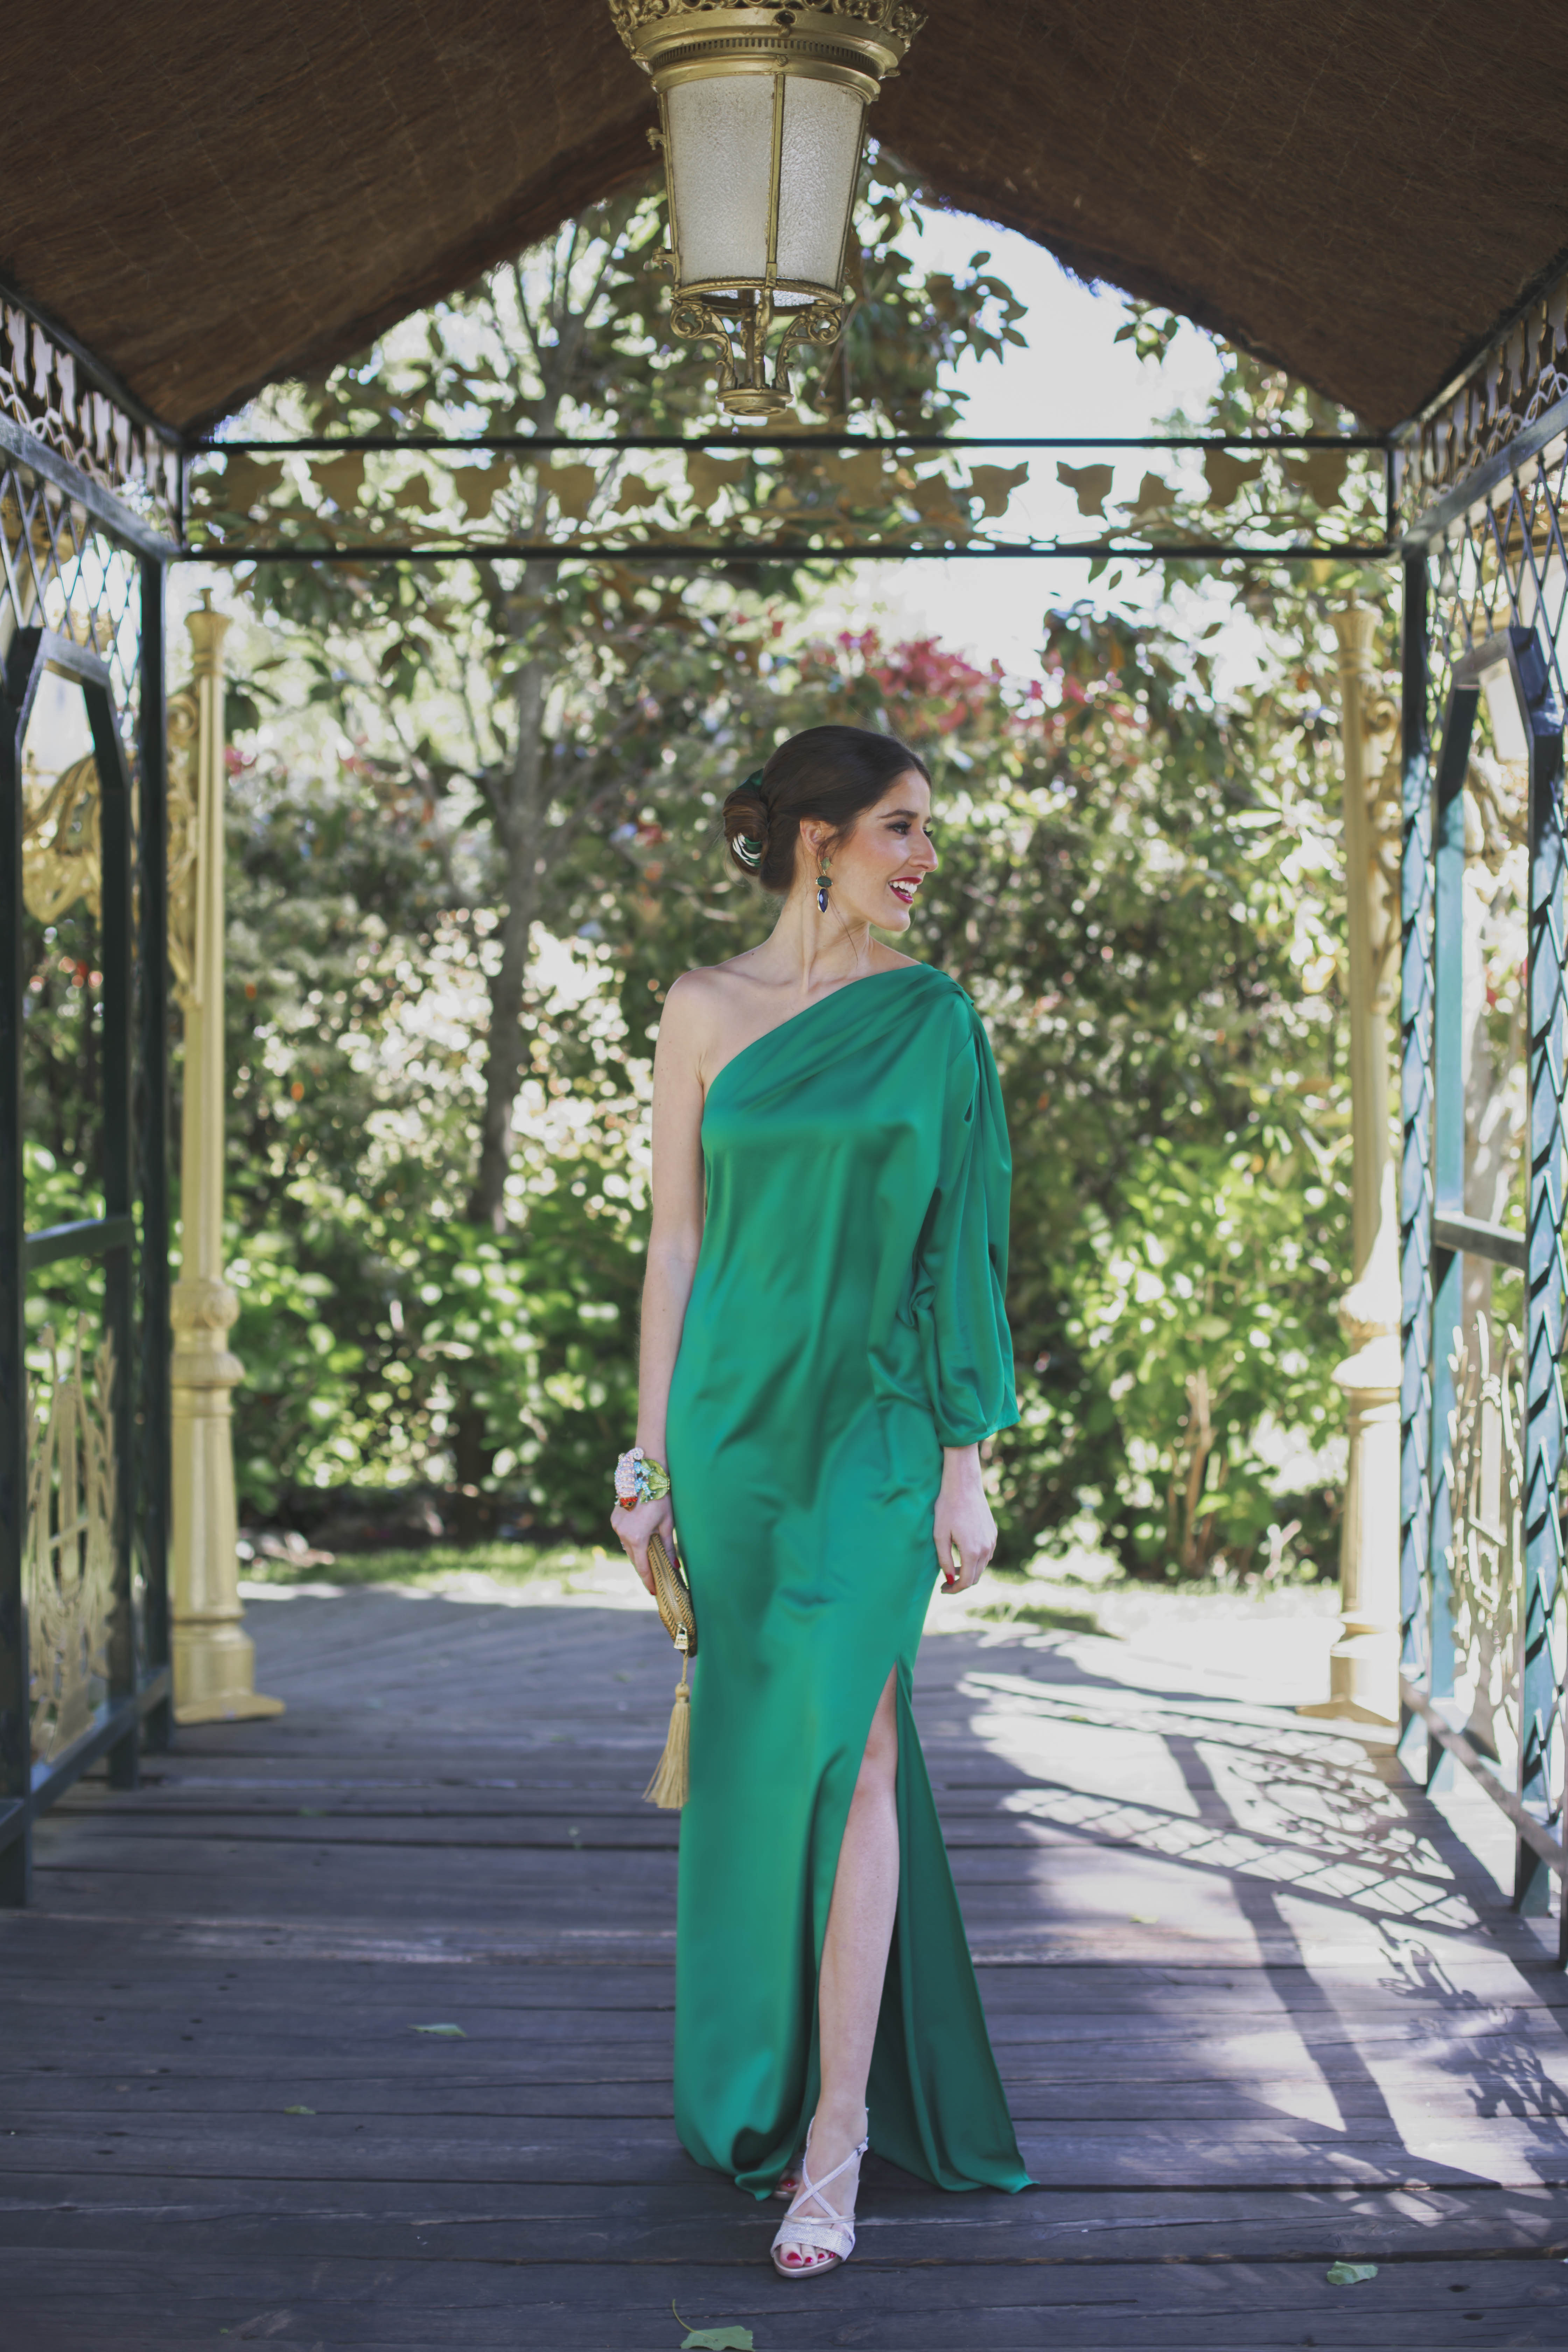 Look invitada perfecta boda noche vestido largo saten verde asimetrico